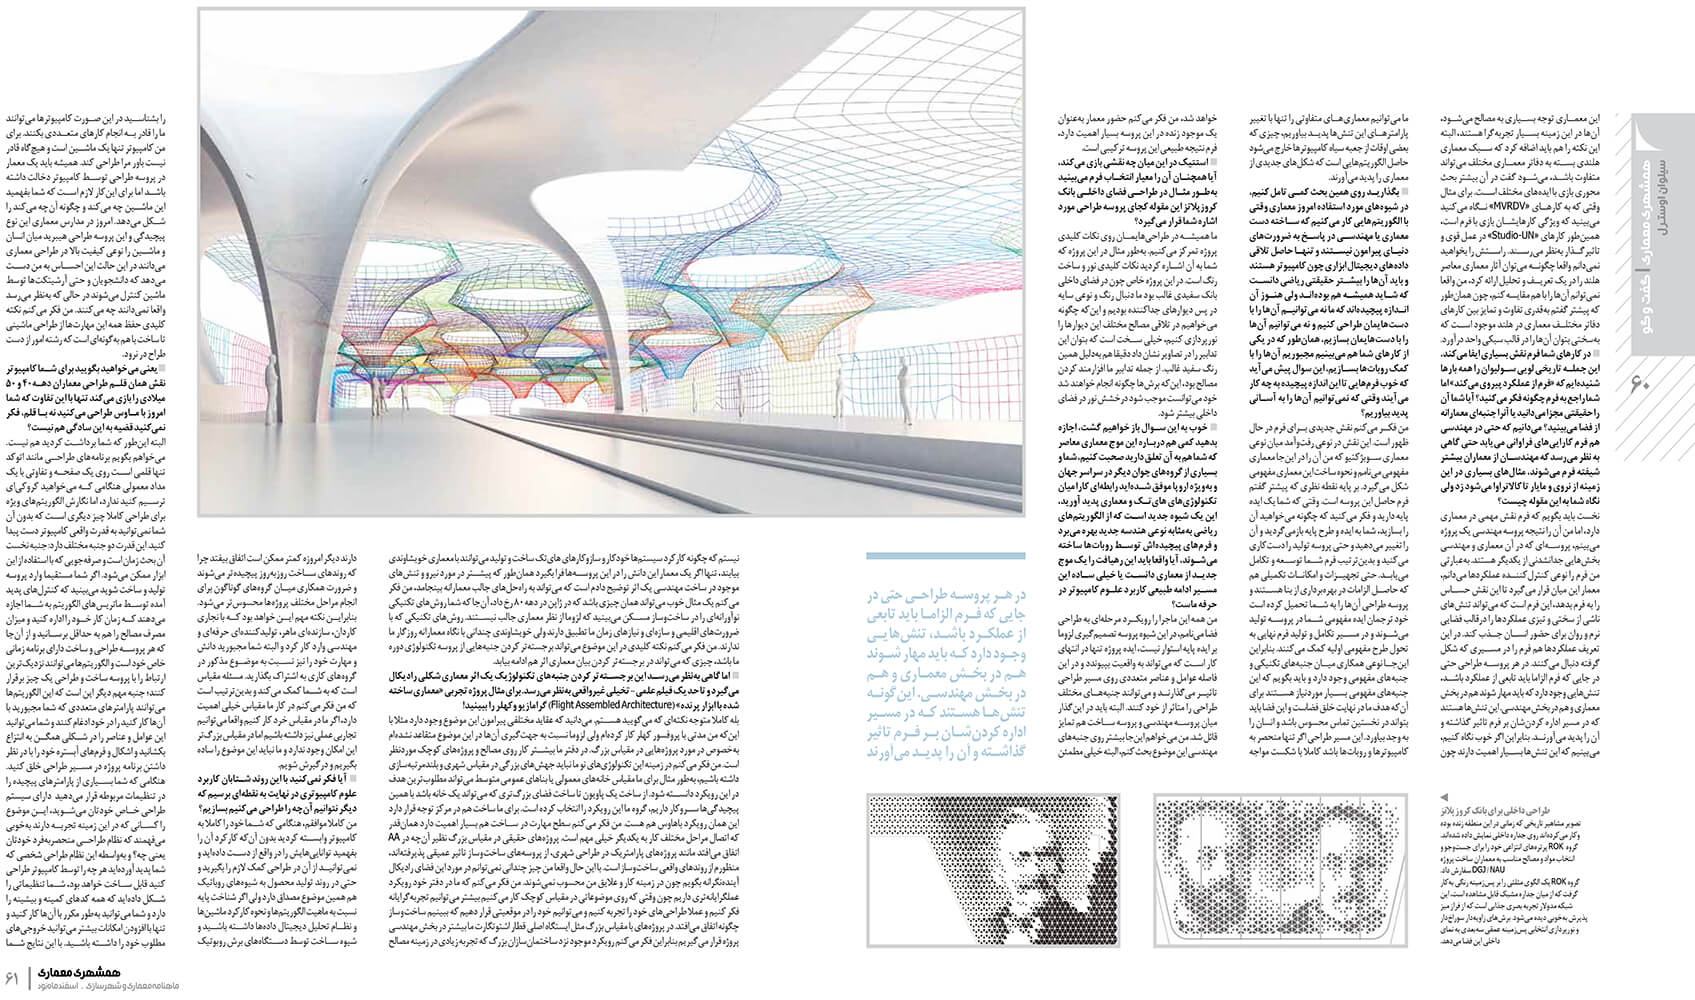 picture no. 3 of publication: Architecture and Algorithm, author: Kambiz Moshtaq